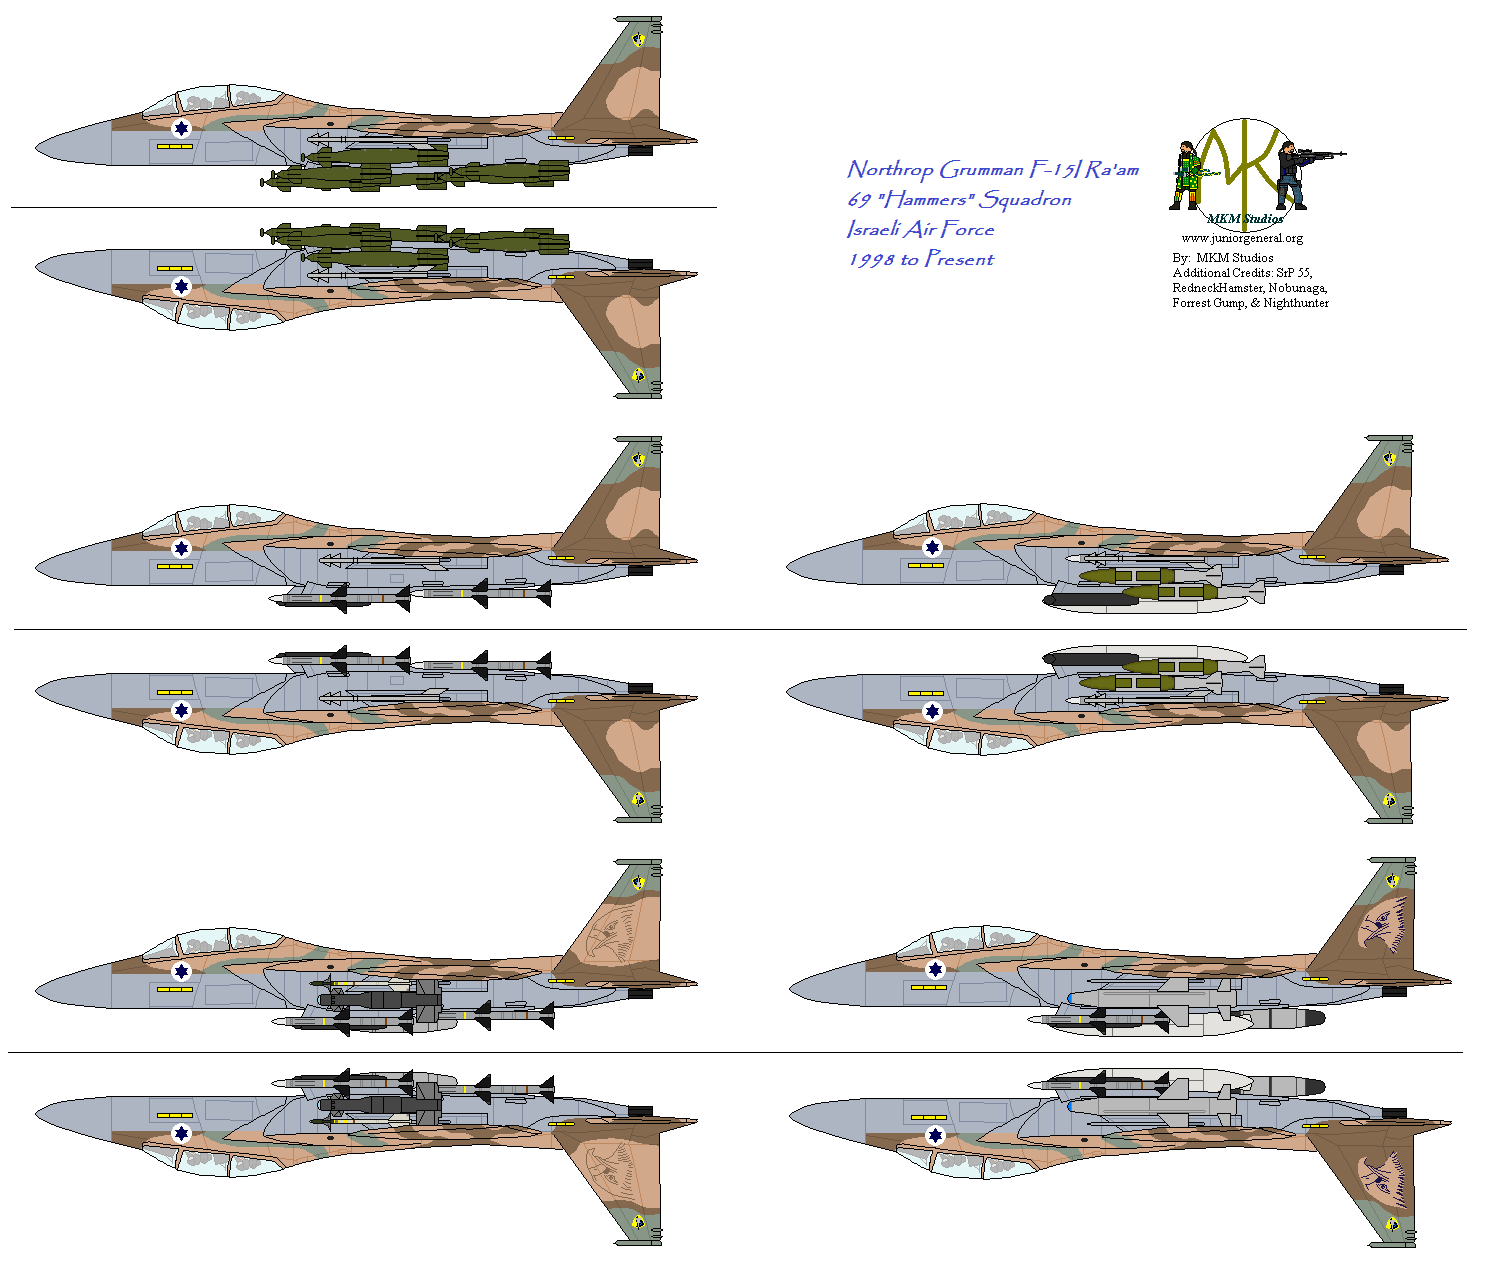 Israeli Northrop Grumman F-15 Ra'am